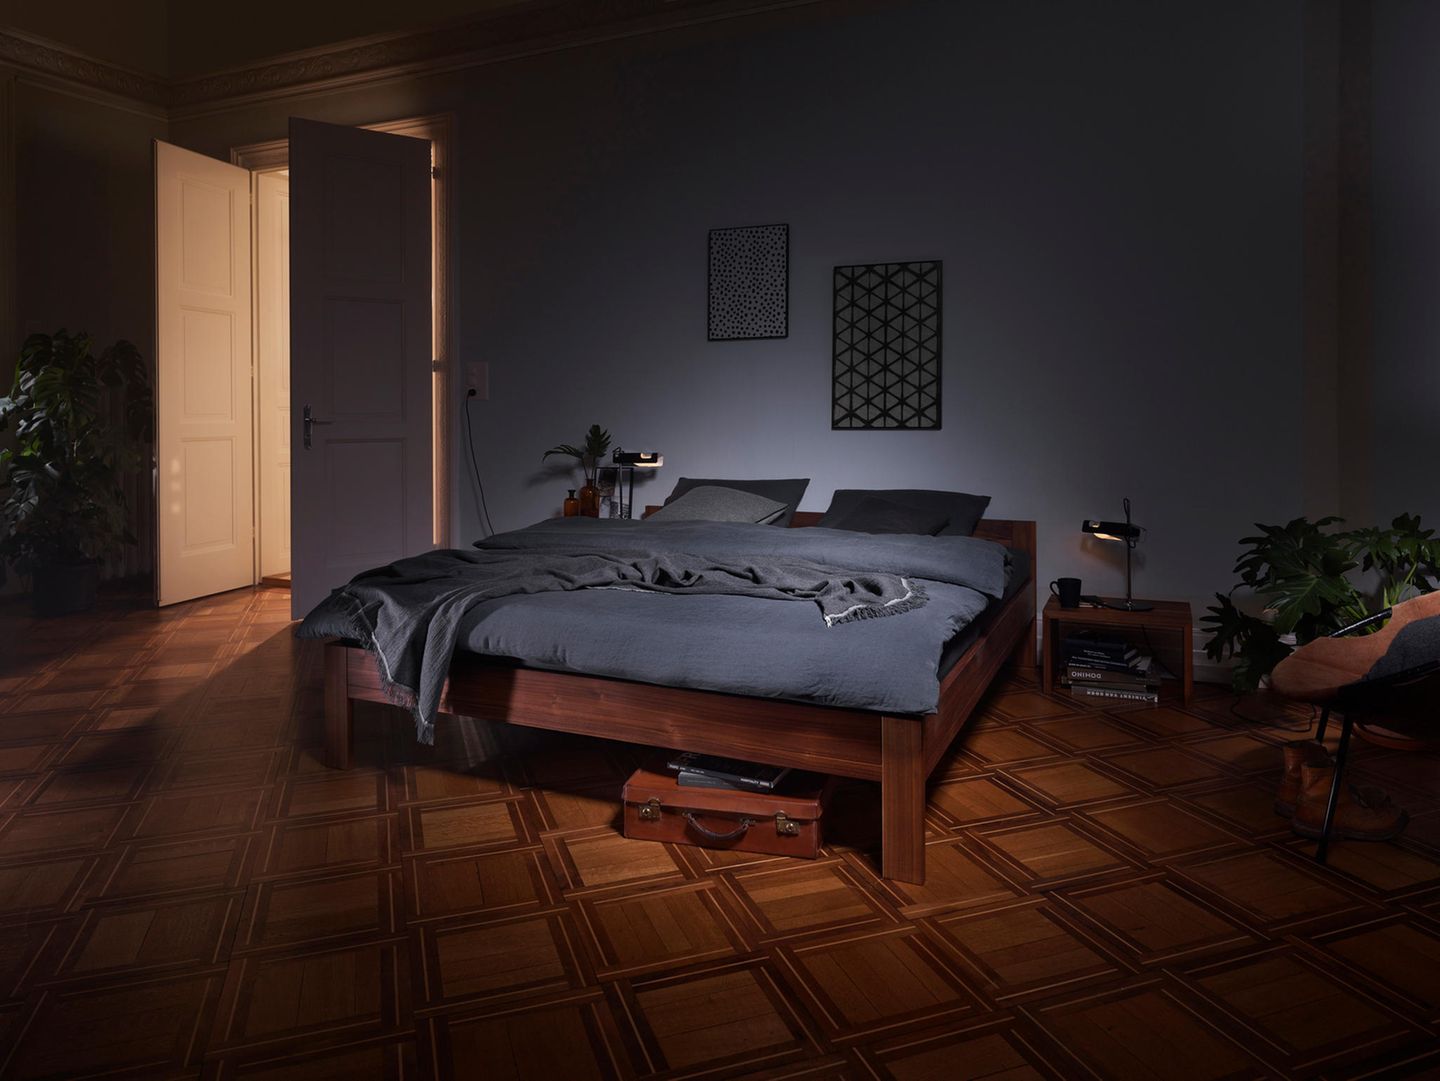 Ein dunkles Holzbett mit grauer Bettwäsche steht in einem abgedunkelten Raum